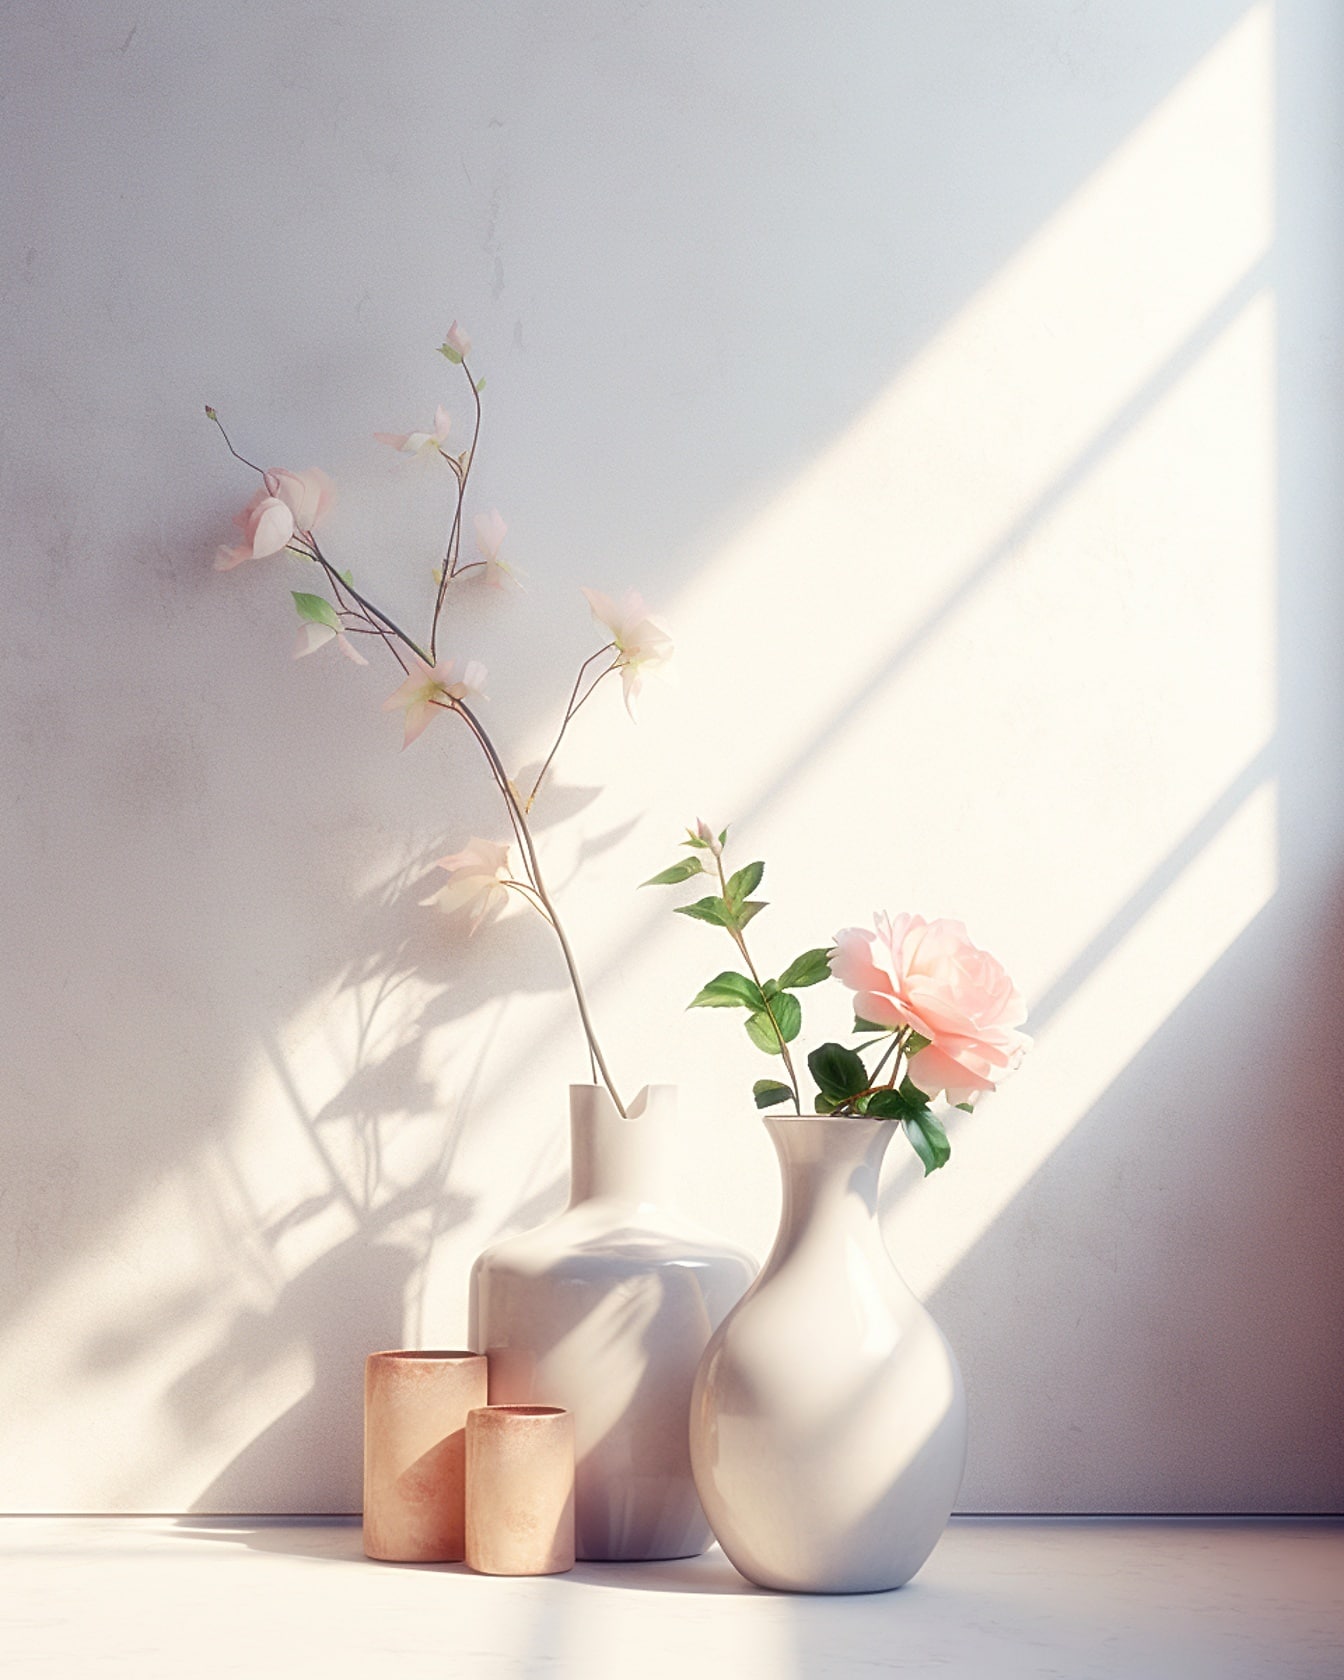 Dos jarrones blancos de porcelana con flores de rosa blanca sobre una mesa a una luz suave